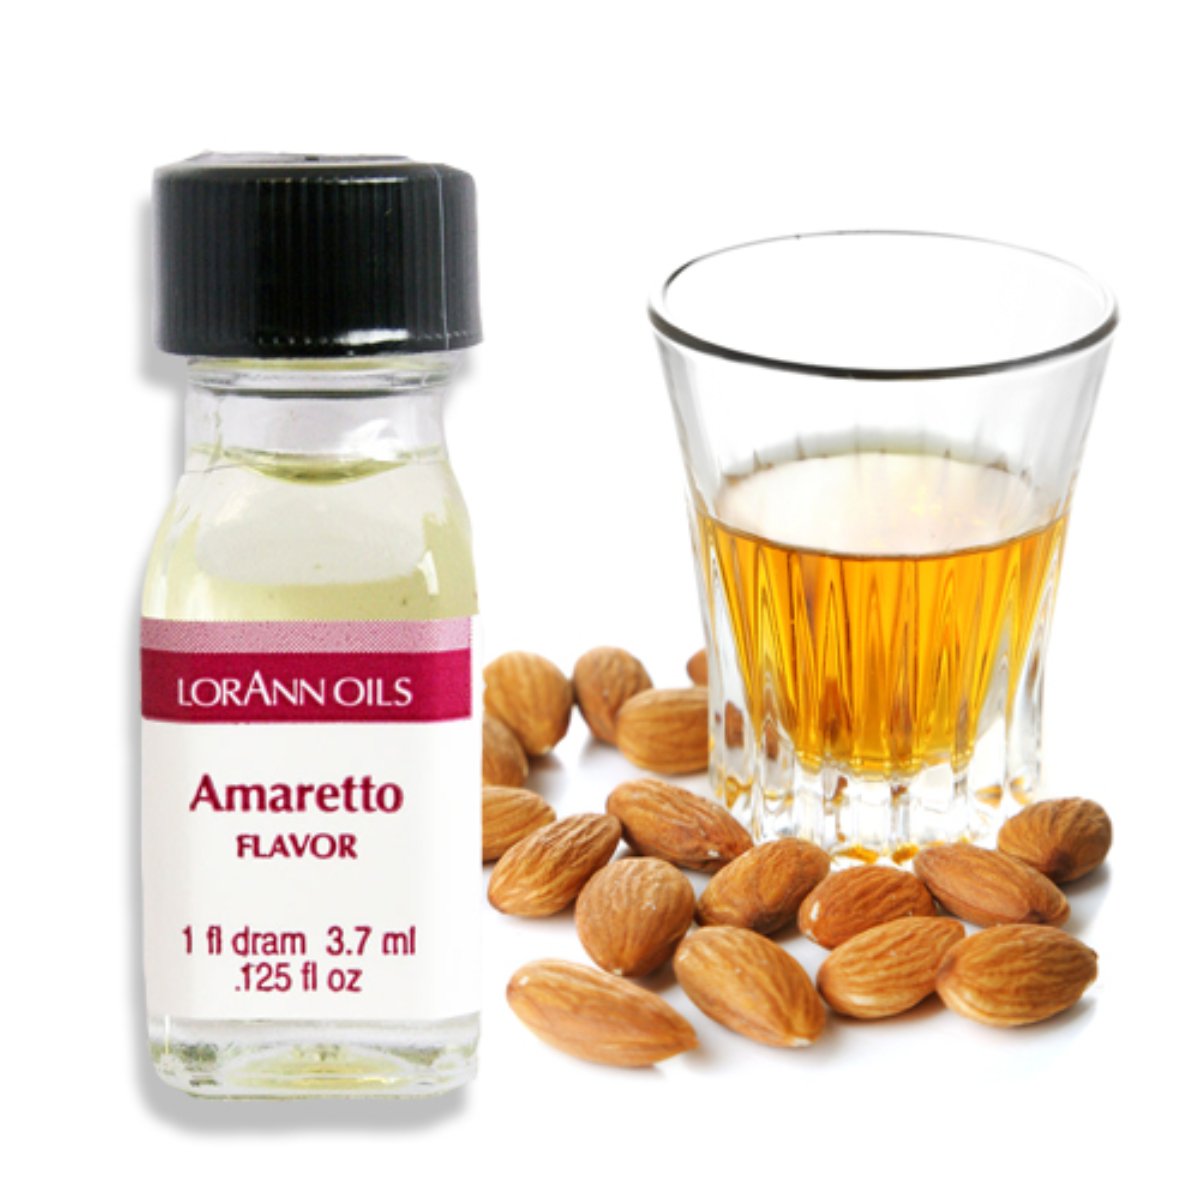 Amaretto Flavor 1 Dram - Bake Supply Plus